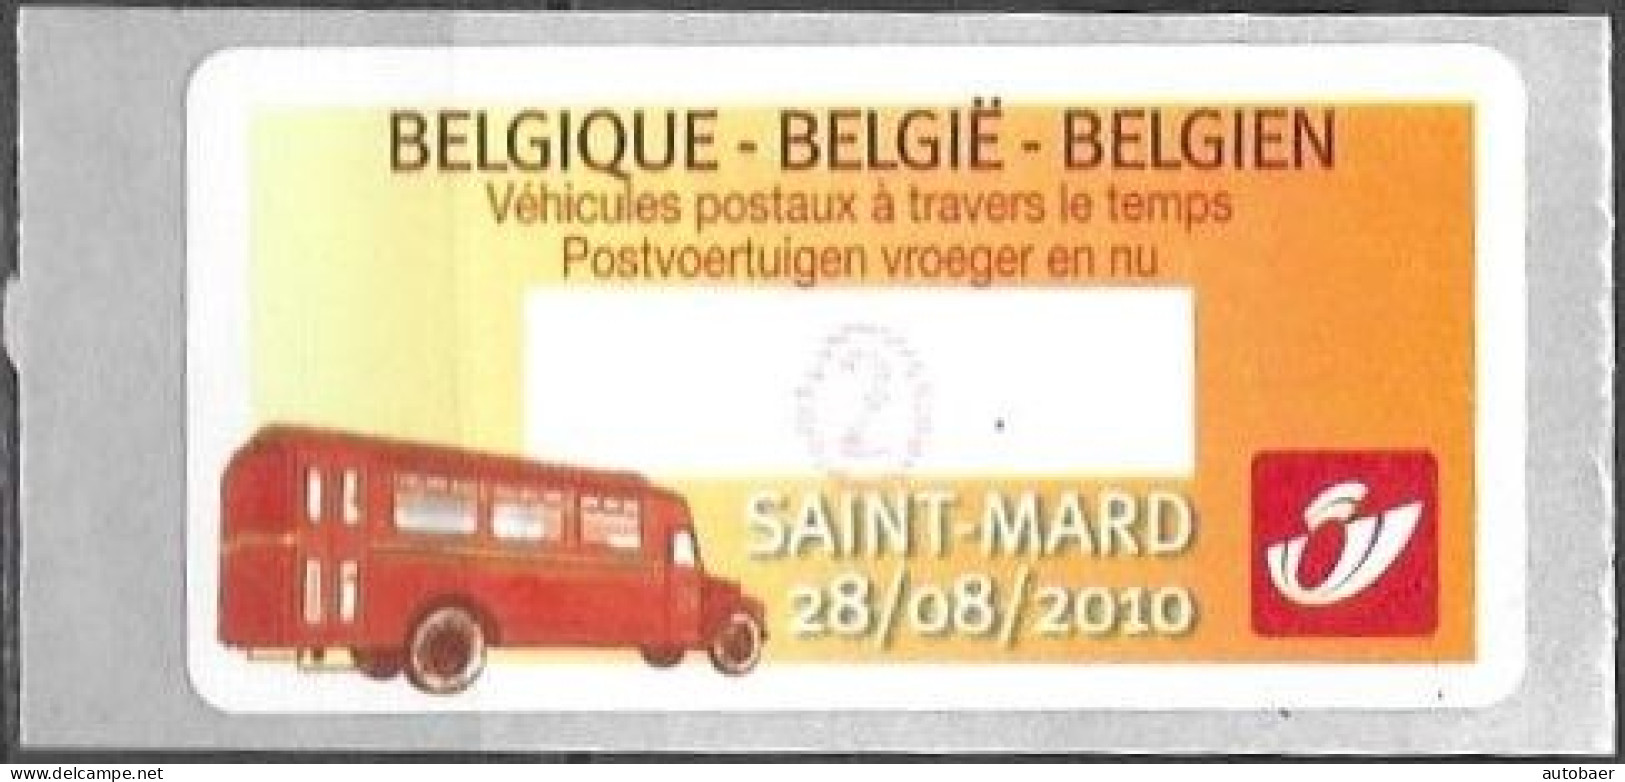 Belgium Belgique Belgien 2010 ATM Machine Stamp Saint-Mard Post Bus Mi. No. 70 "2" MNH Neuf ** Postfrisch - Postfris